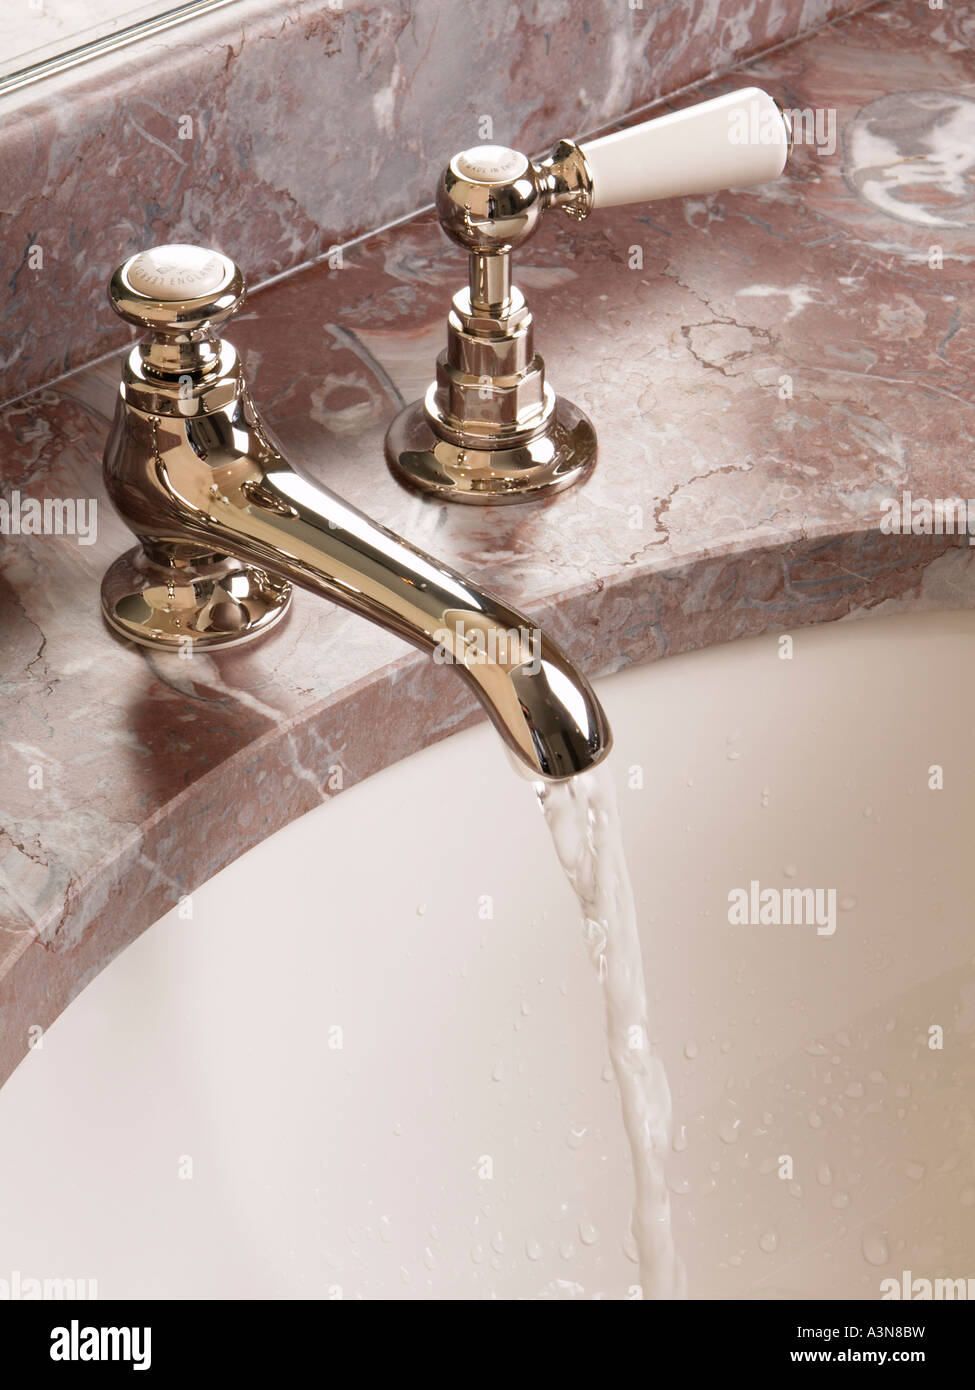 Grifo del baño antiguo clásico toca en la parte superior de mármol rosa del fregadero con agua corriente Foto de stock